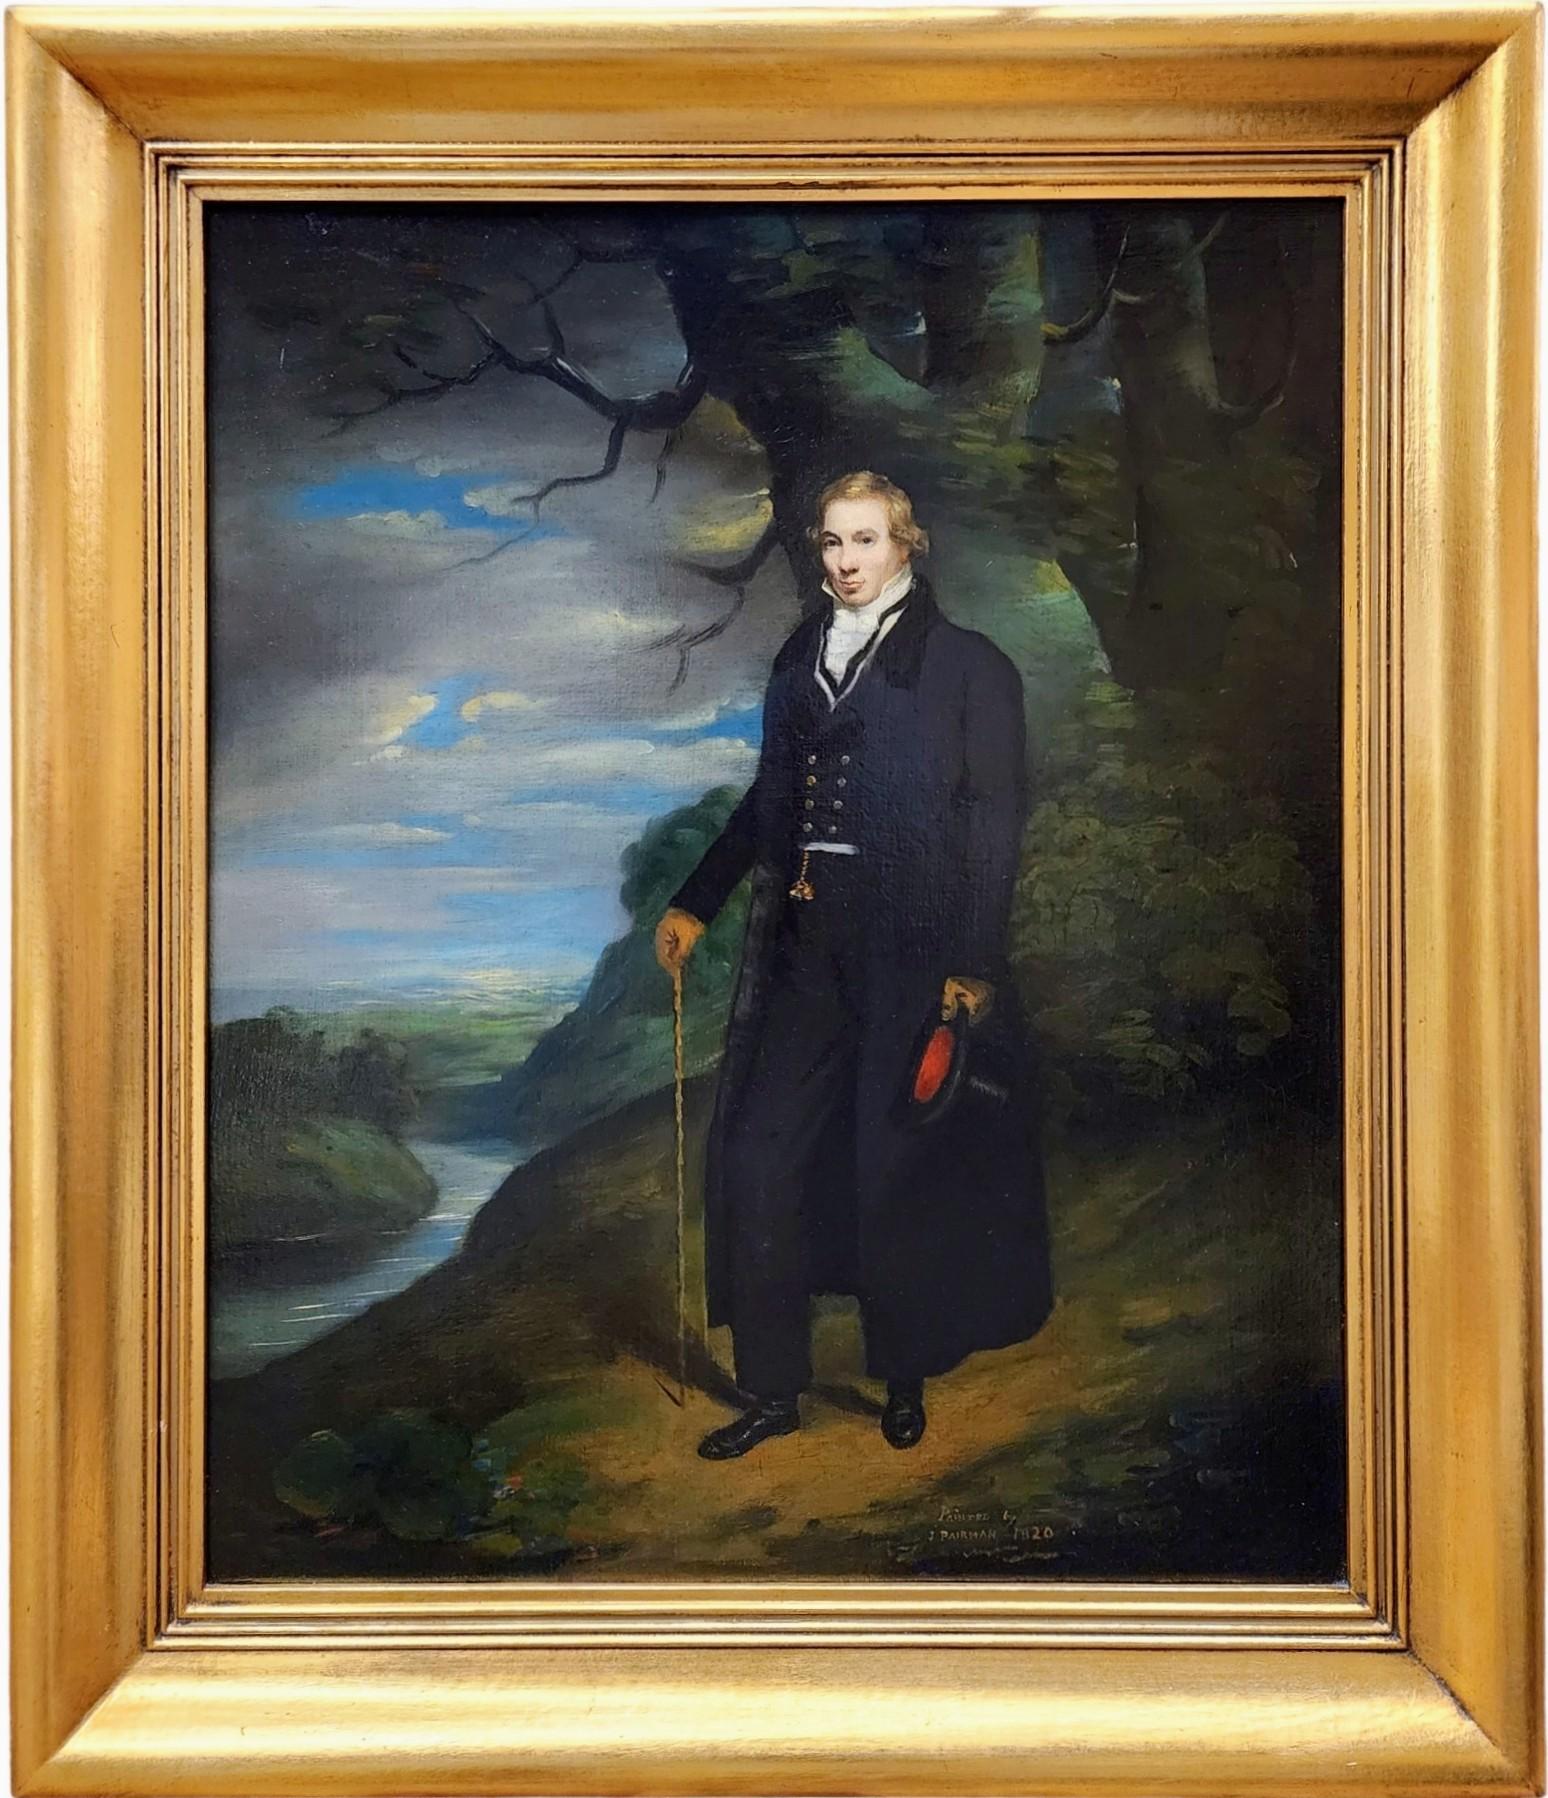 John Pairman Landscape Painting - Portrait of a Gentleman in a Landscape, Scottish Portraiture, Portrait, Wealthy 